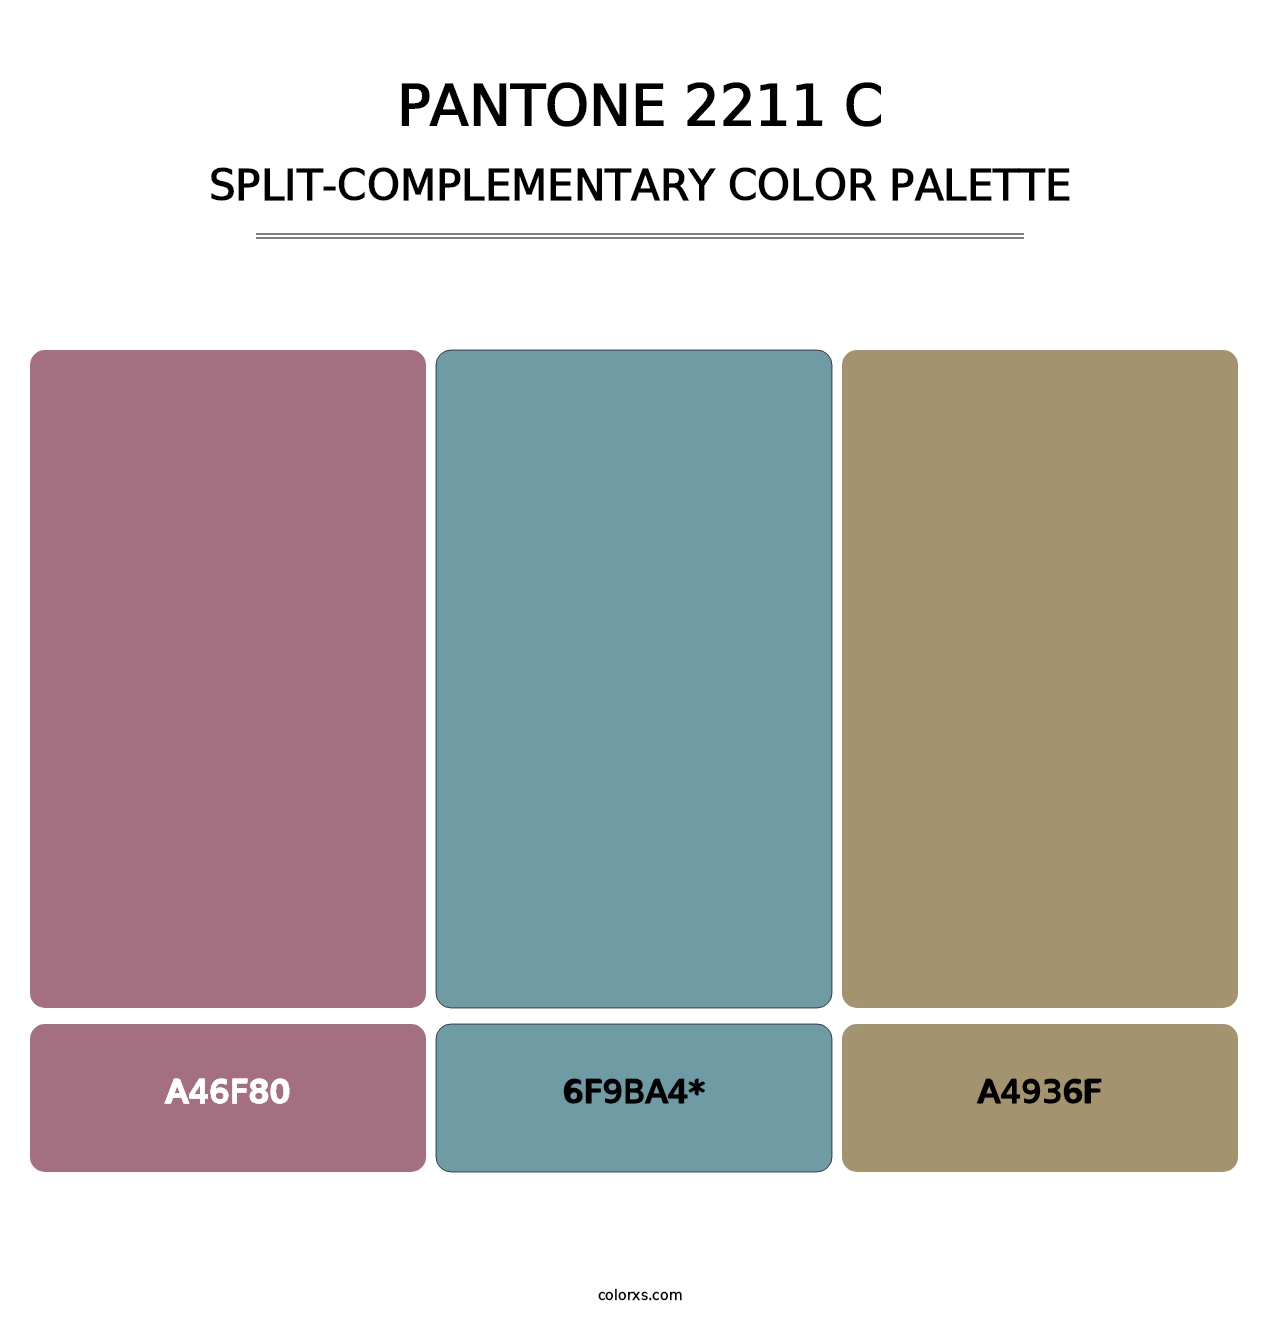 PANTONE 2211 C - Split-Complementary Color Palette